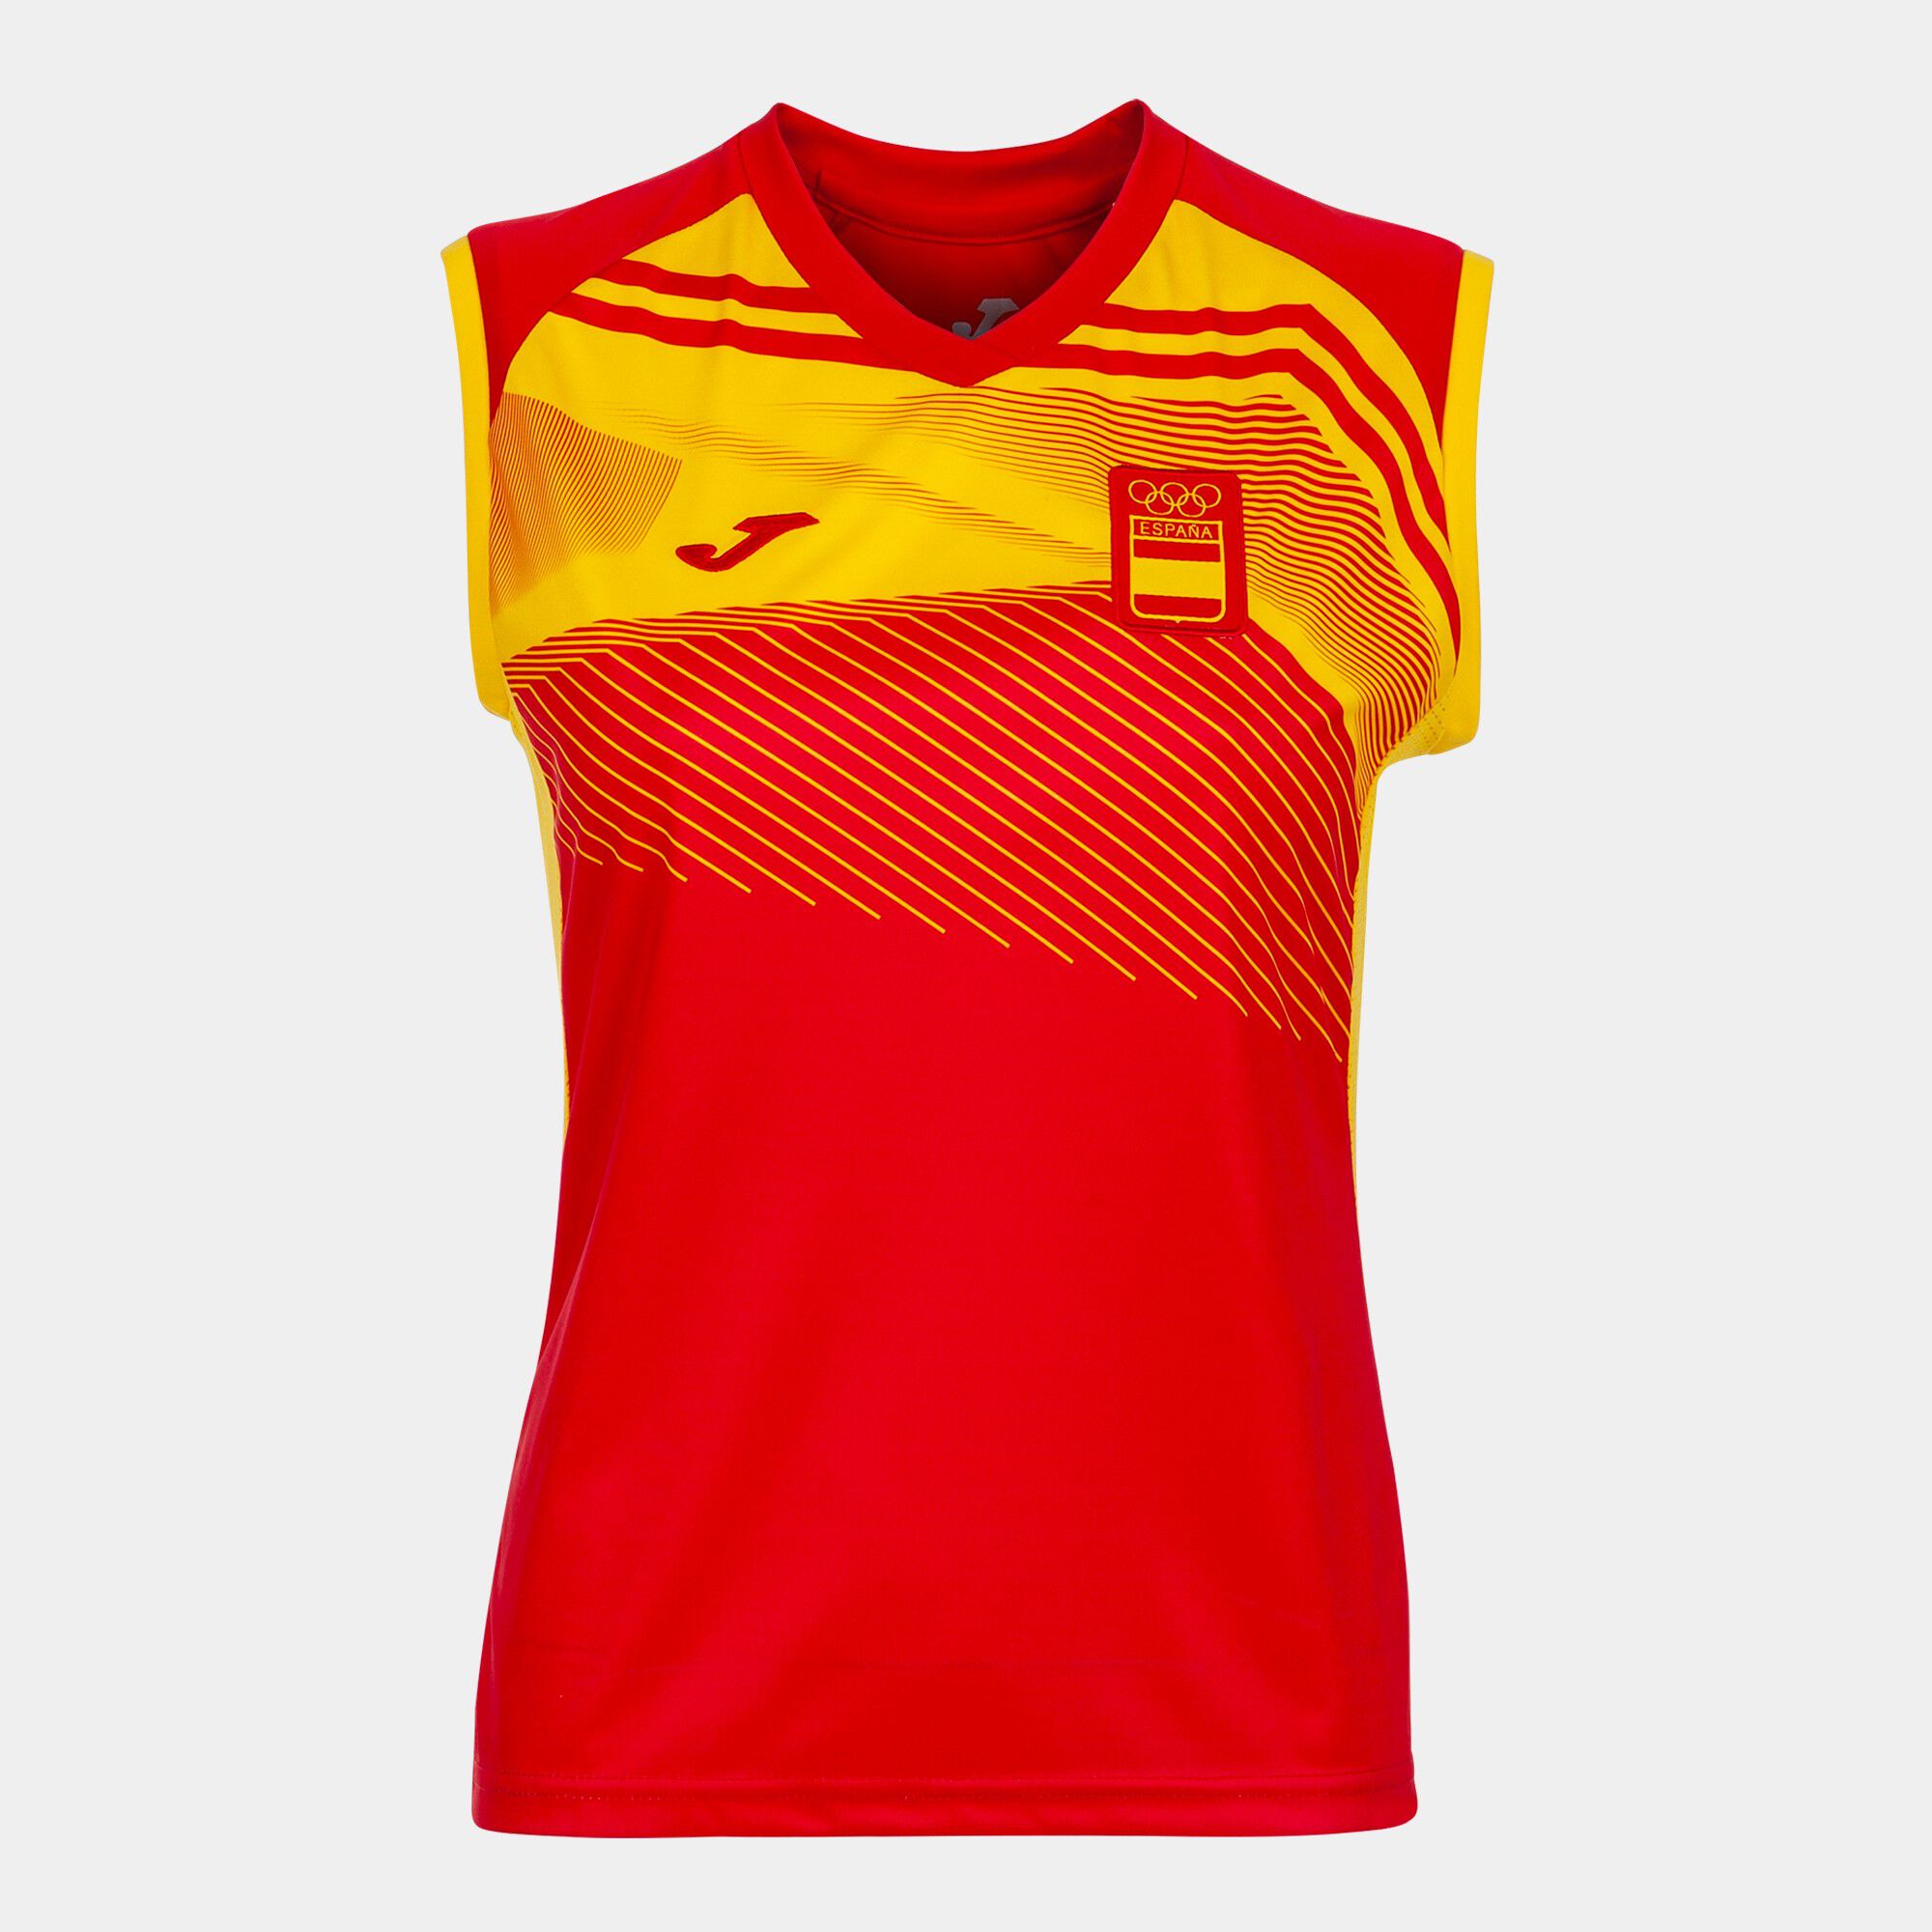 Shirt s/m Spanisches Olympisches Komitee frau